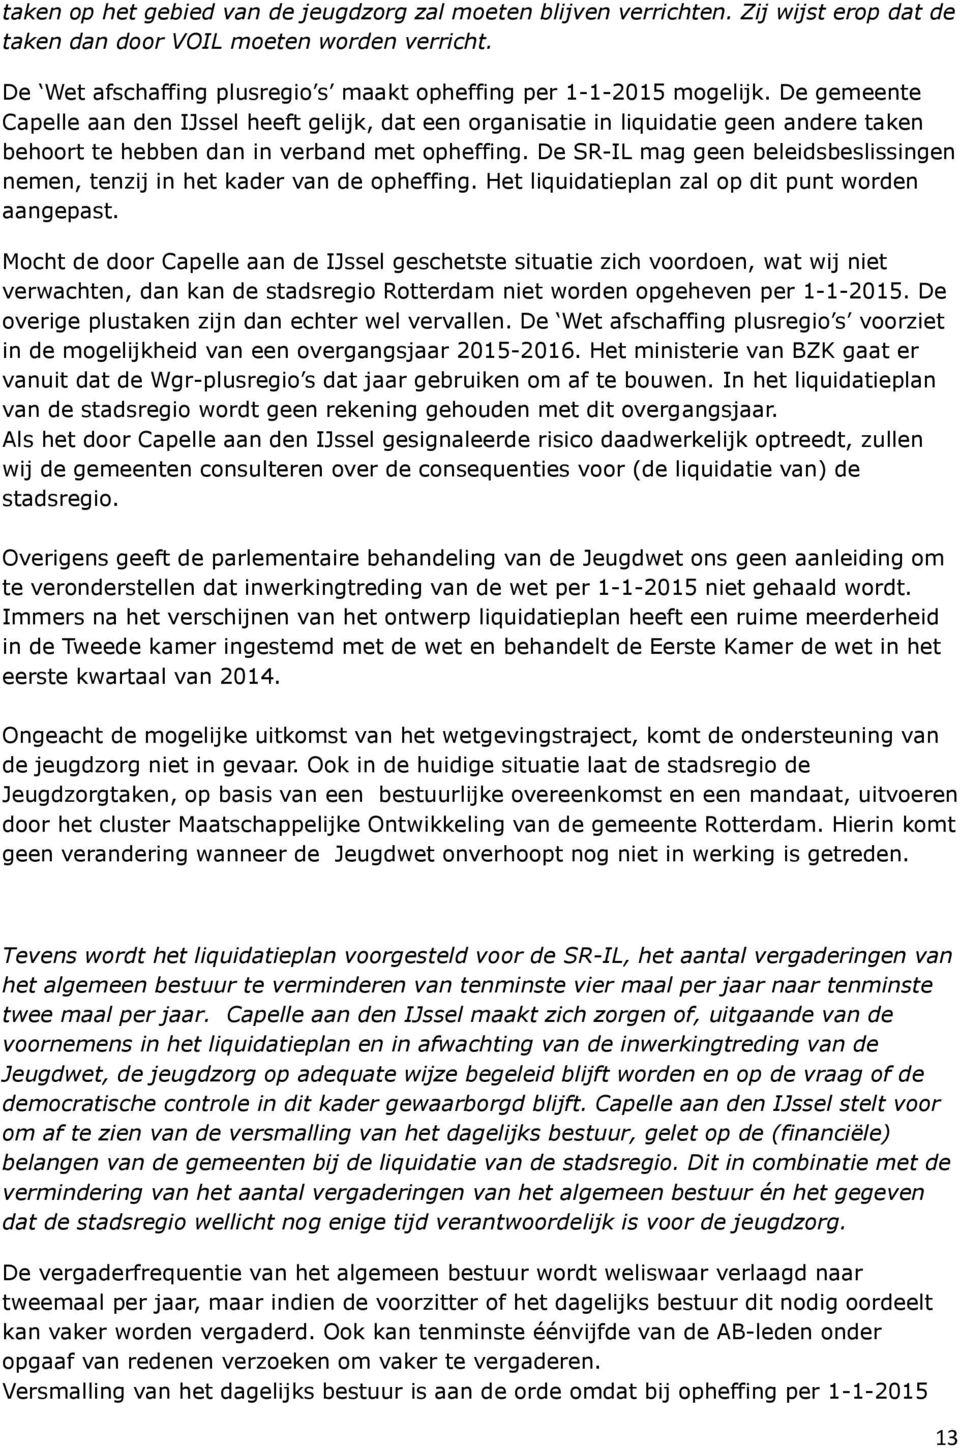 De gemeente Capelle aan den IJssel heeft gelijk, dat een organisatie in liquidatie geen andere taken behoort te hebben dan in verband met opheffing.